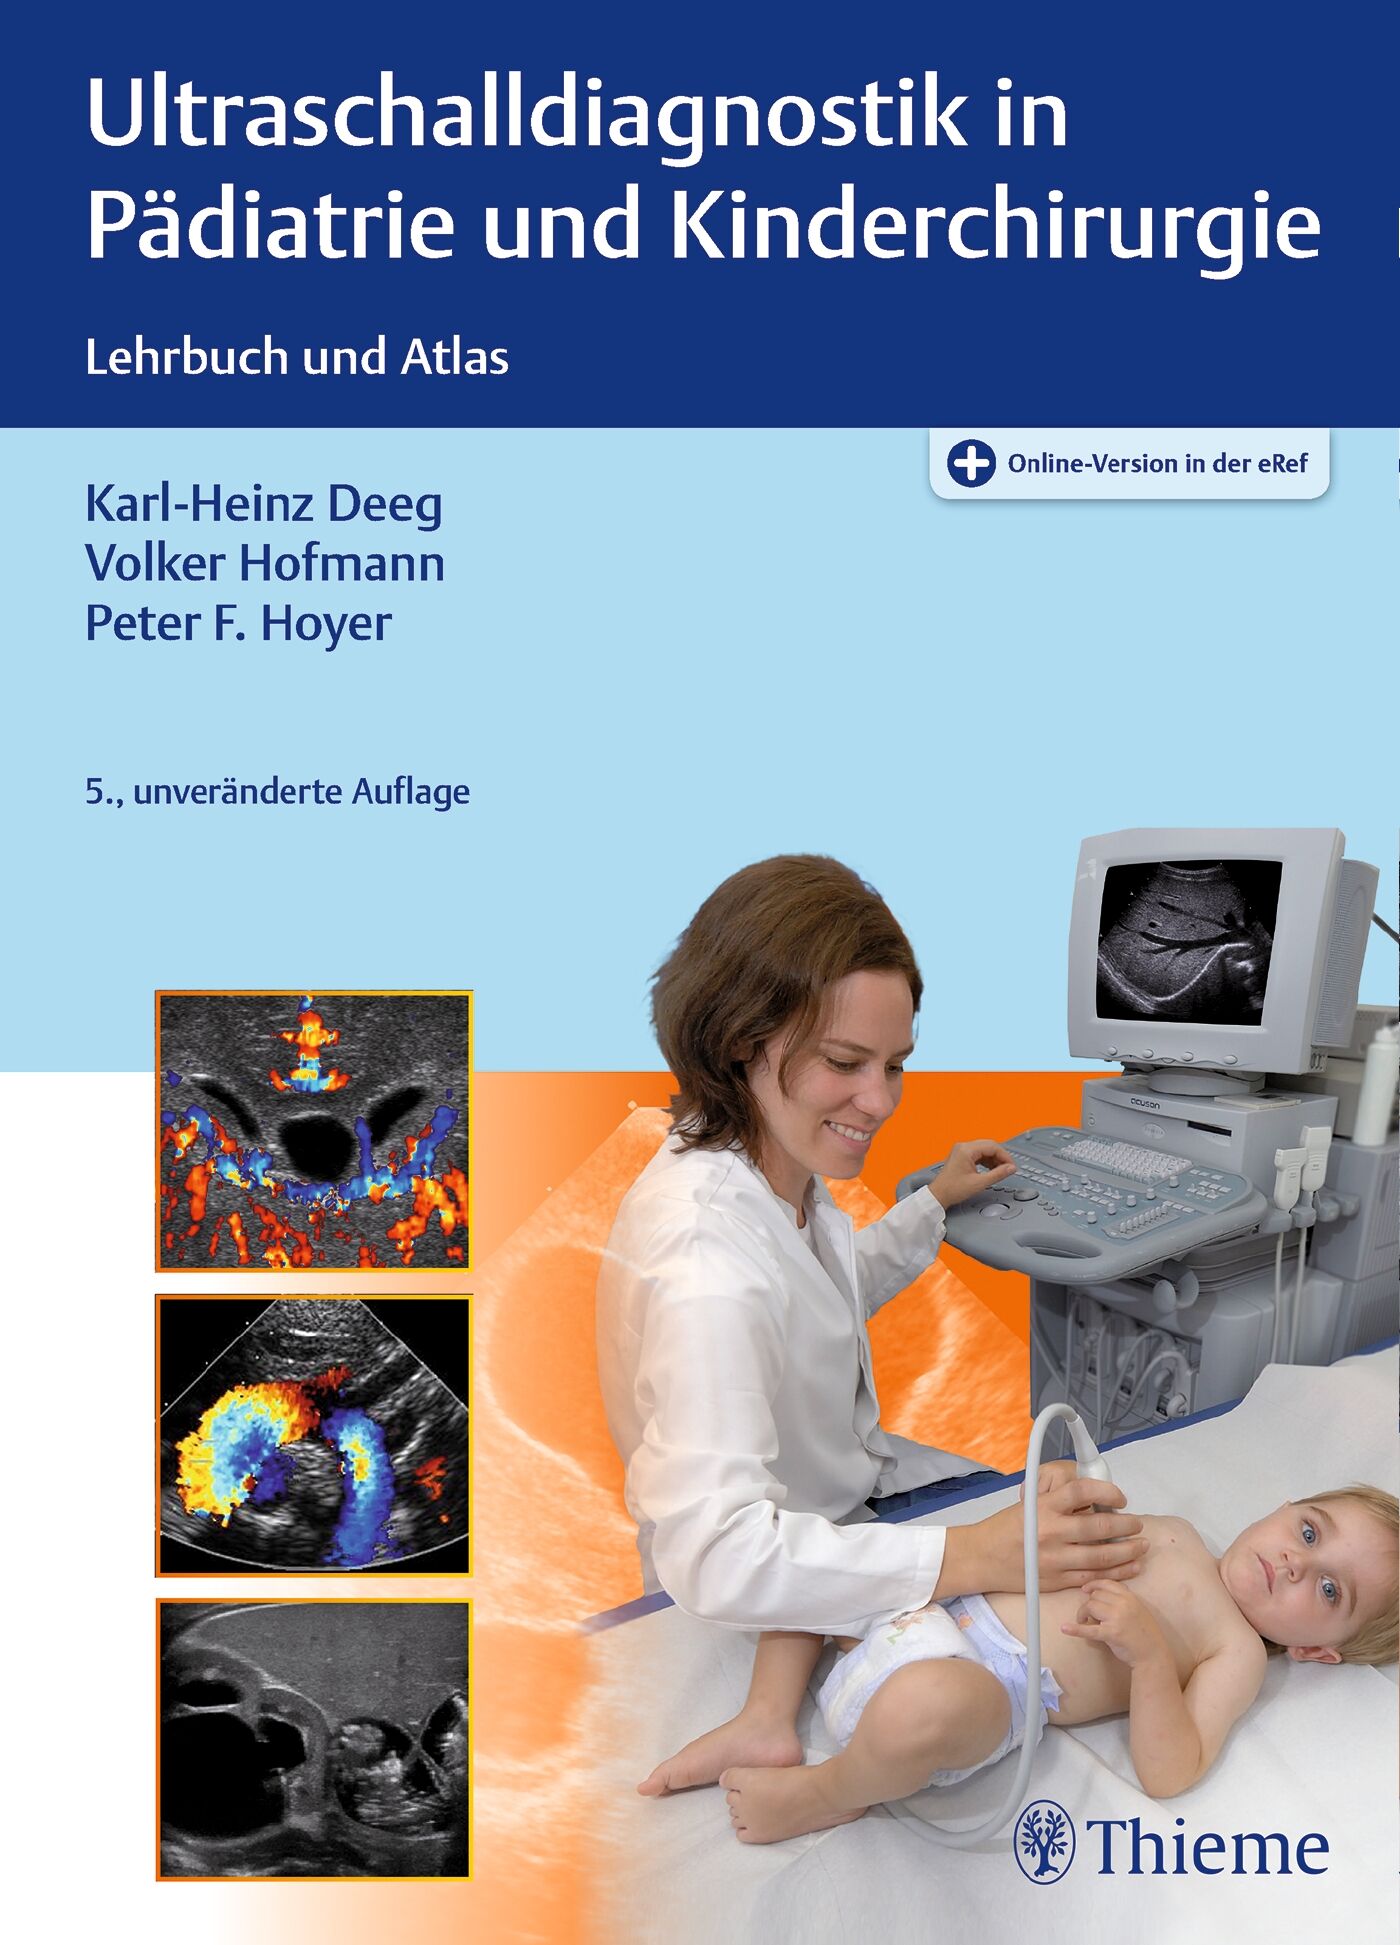 Ultraschalldiagnostik in Pädiatrie und Kinderchirurgie, 9783132424685